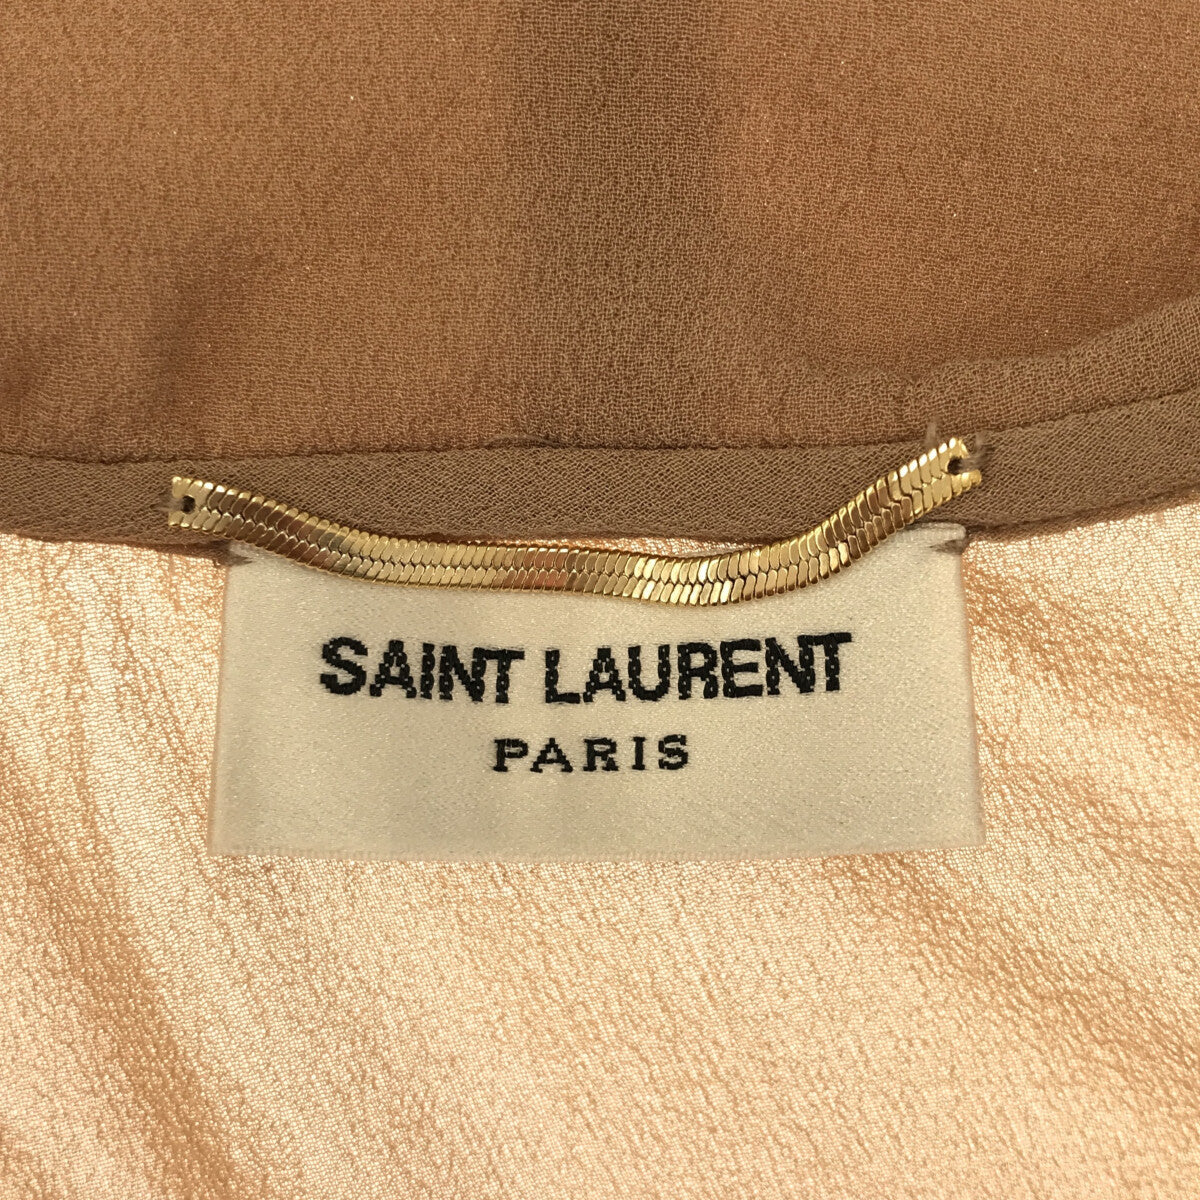 SAINT LAURENT PARIS / サンローランパリ | 丸襟 シフォンブラウス | 36 | キャメル | レディース